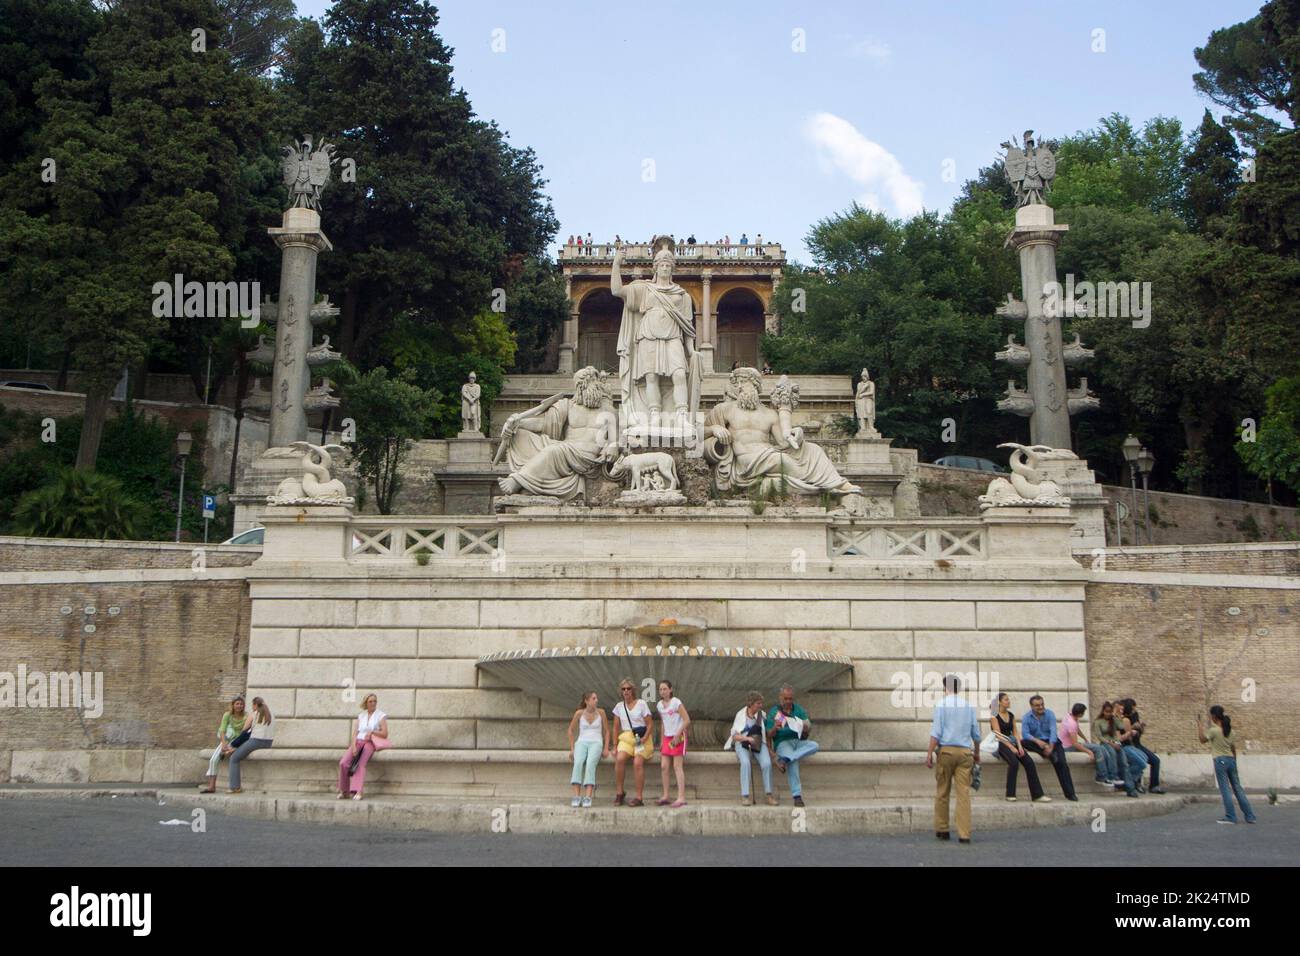 Fontana della dea di Roma auf de Piazza del Popolo en ROM, Latium, Italie Banque D'Images